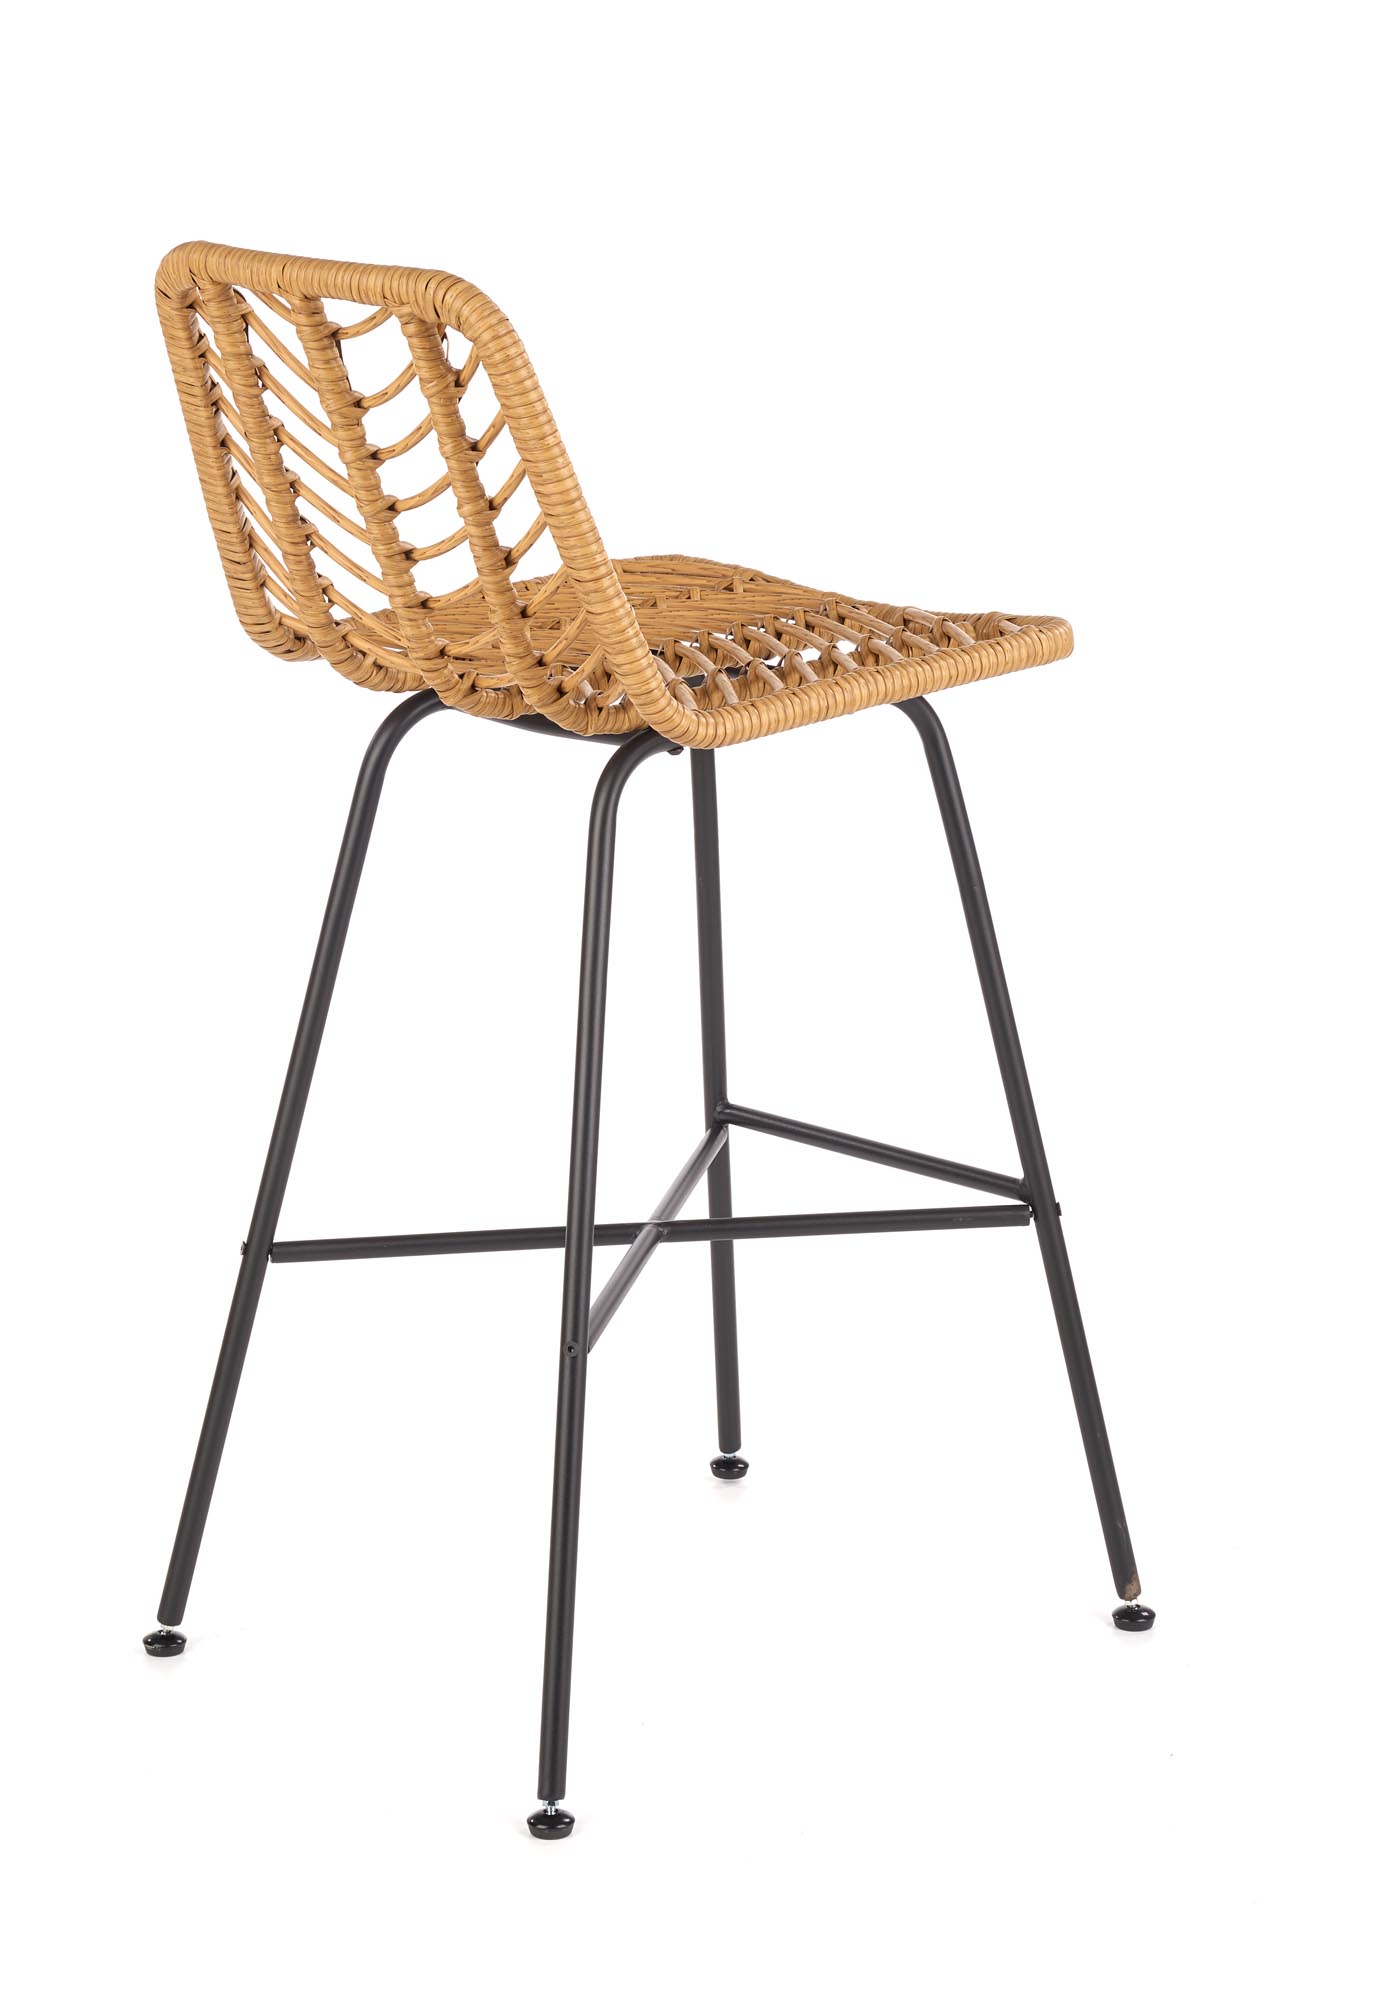 H97 bárszék - fekete / natúr h97 Barová židle Fekete / přírodní